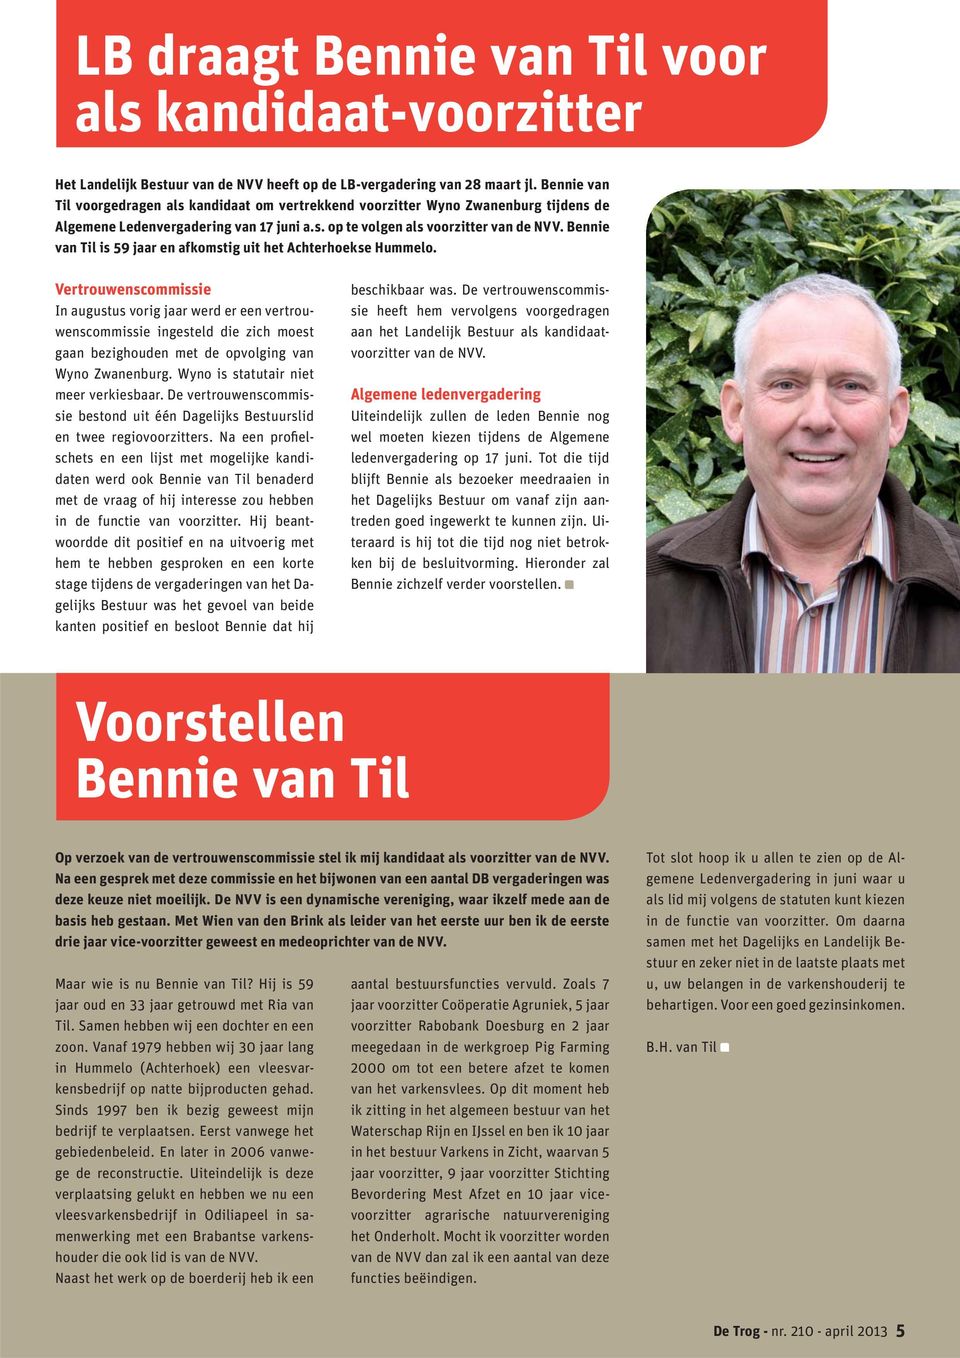 Bennie van Til is 59 jaar en afkomstig uit het Achterhoekse Hummelo.